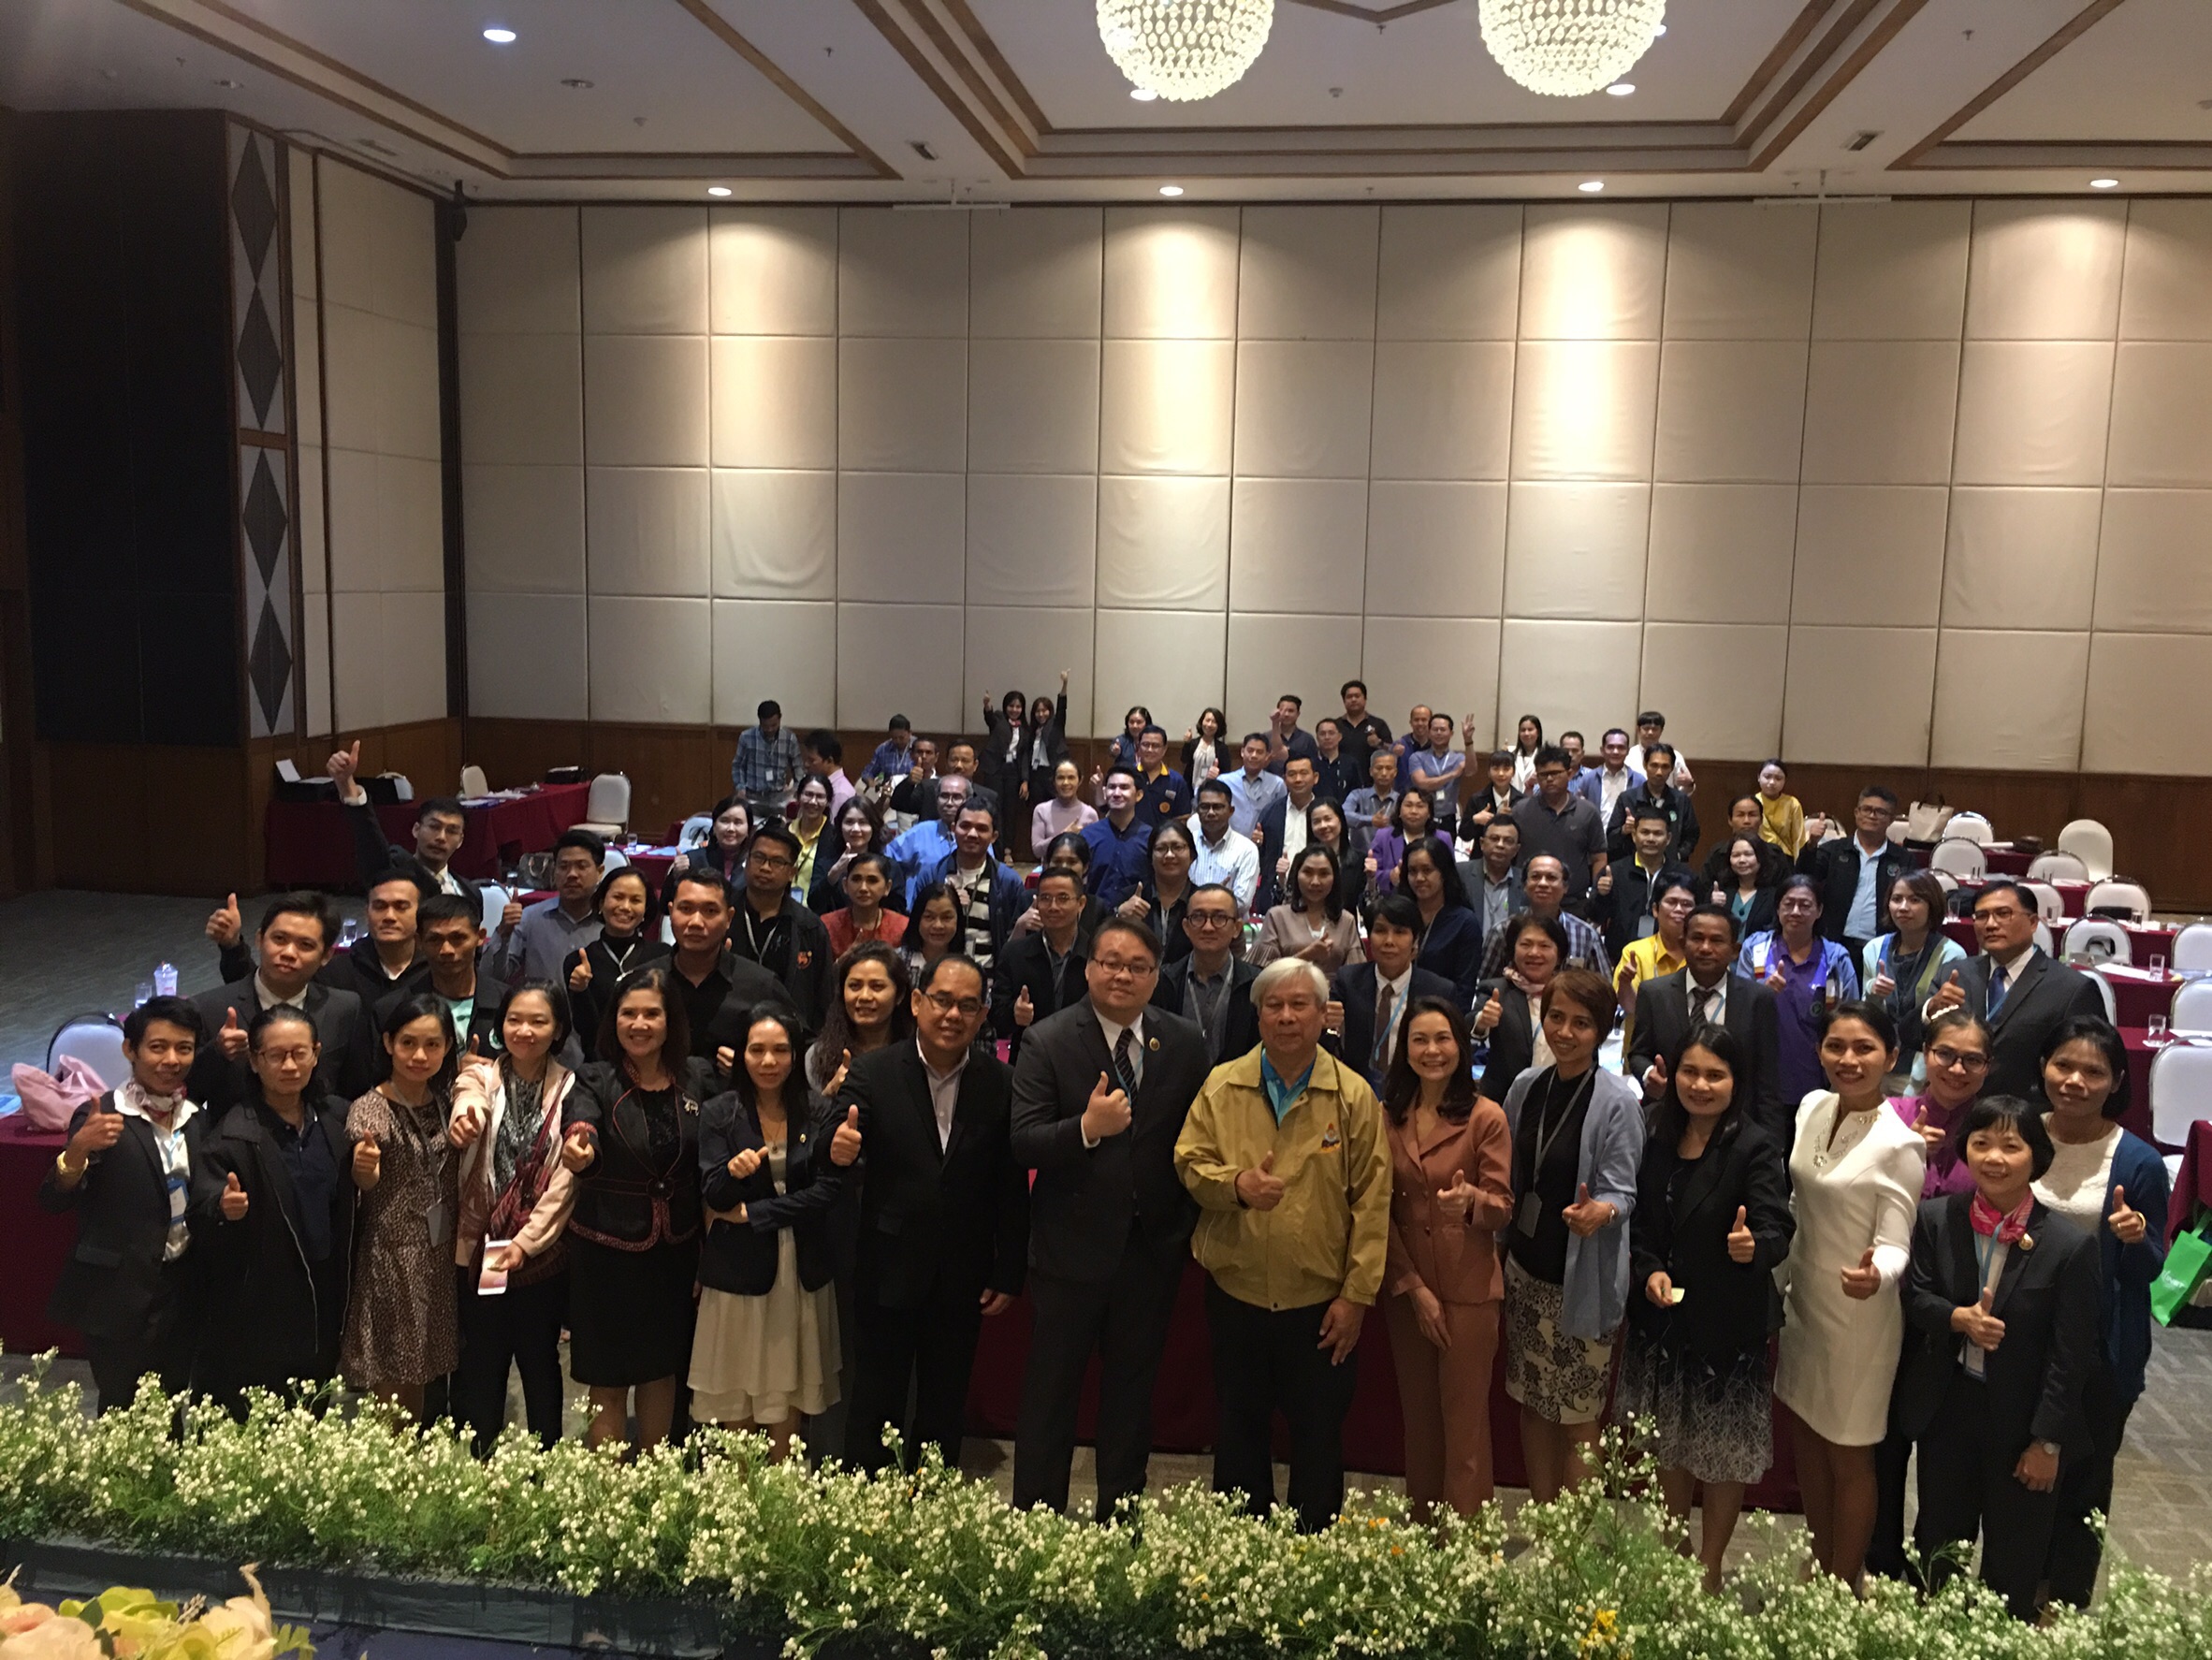 ประชุมวิชาการร่วมกับรังสีการแพทย์แห่งประเทศไทย ครั้งที่17 27-29 พ.ย. - พร้อมเข้าเยี่ยมและให้กำลังใจหน่วยงานรังสีวิทยาในพื้นที่จังหวัดอุบลราชธานีระหว่างวันที่ 25-26 พฤศจิกายน 2562 17